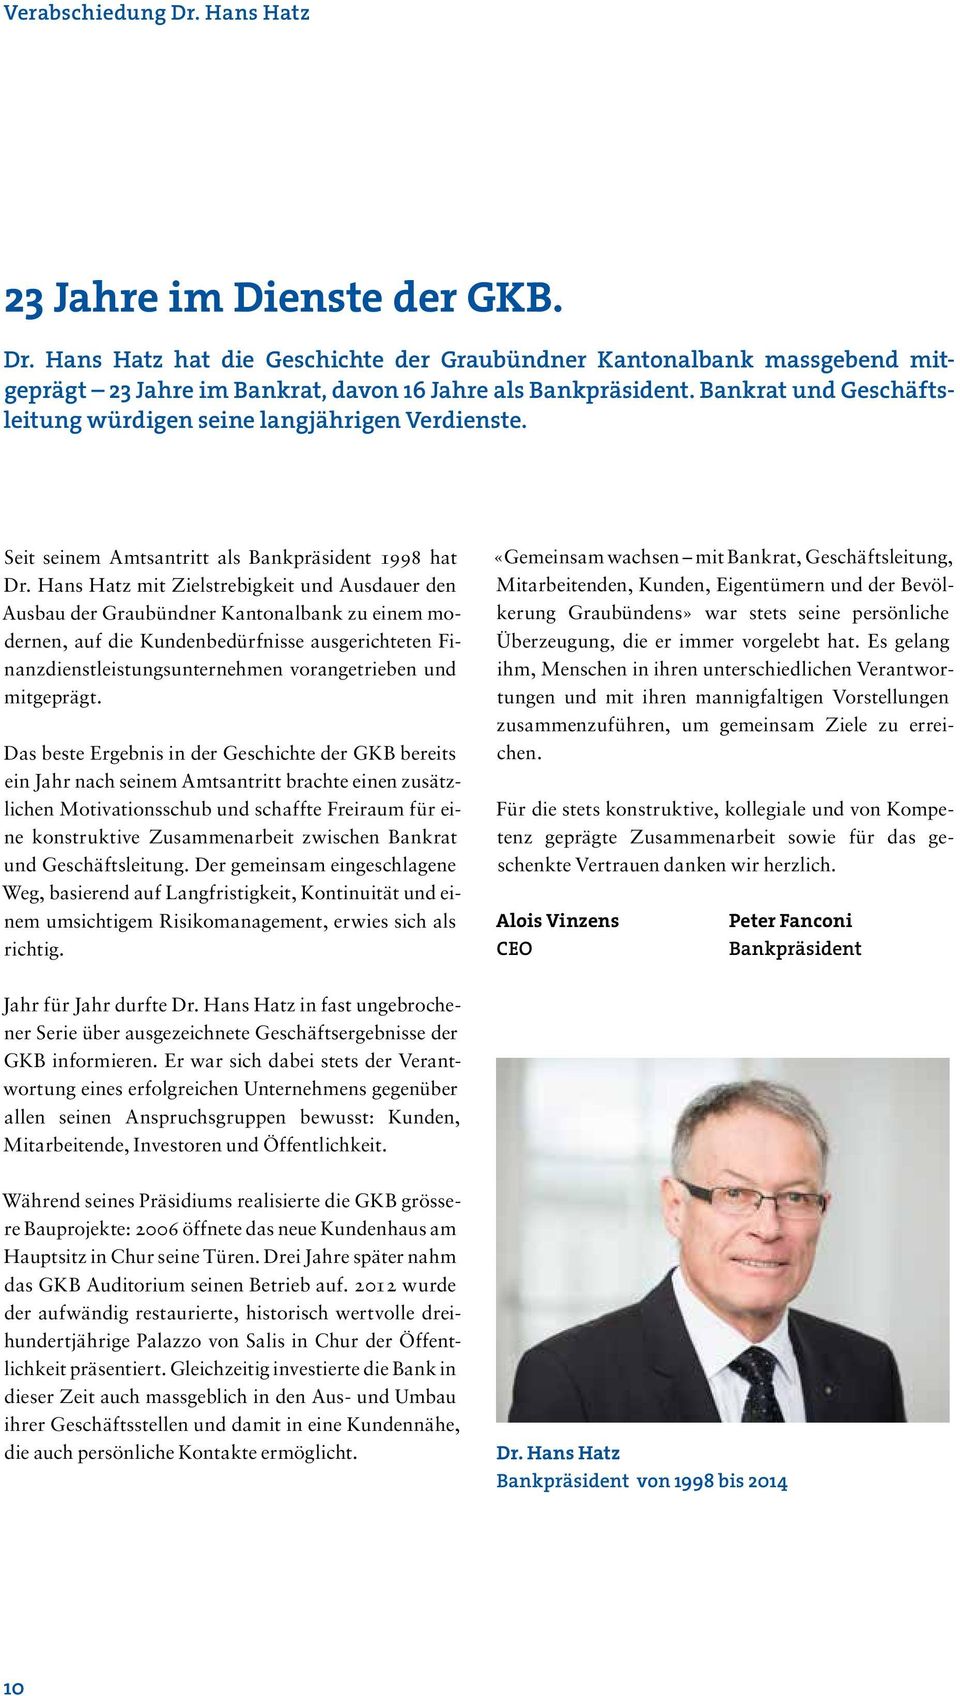 Hans Hatz mit Zielstrebigkeit und Ausdauer den Ausbau der Graubündner Kantonalbank zu einem modernen, auf die Kundenbedürfnisse ausgerichteten Finanzdienstleistungsunternehmen vorangetrieben und